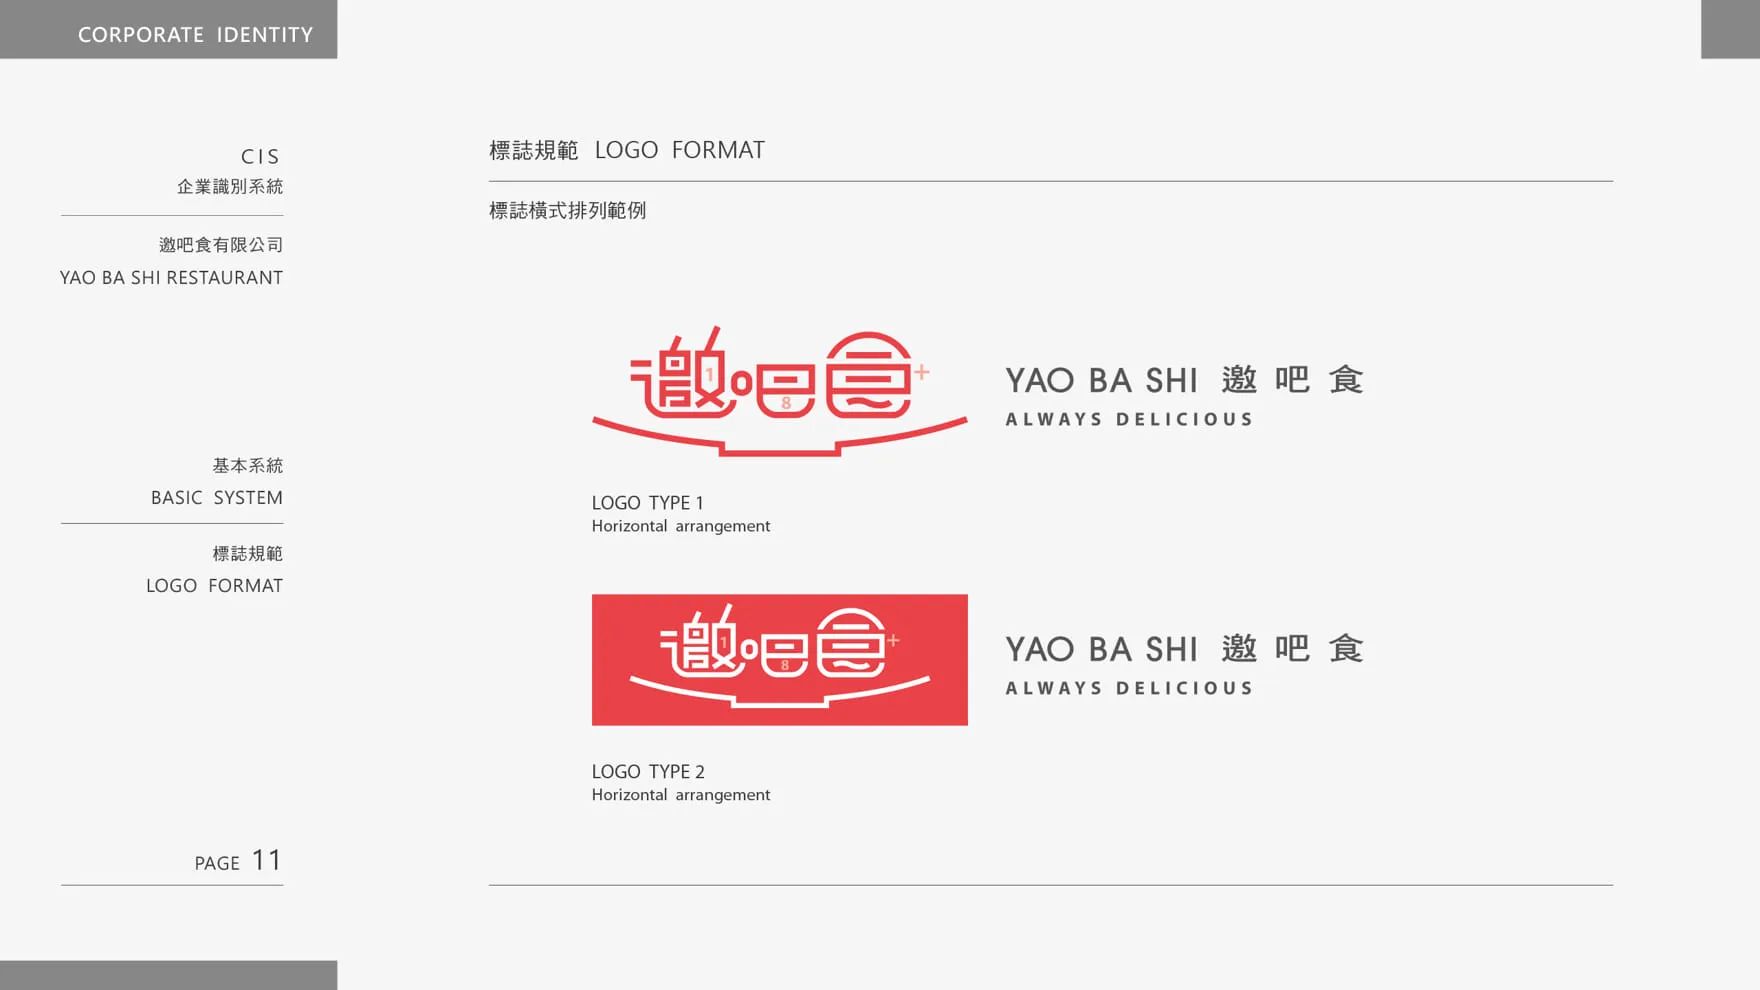 邀吧食 YAO BA SHI 品牌LOGO橫式排列範例